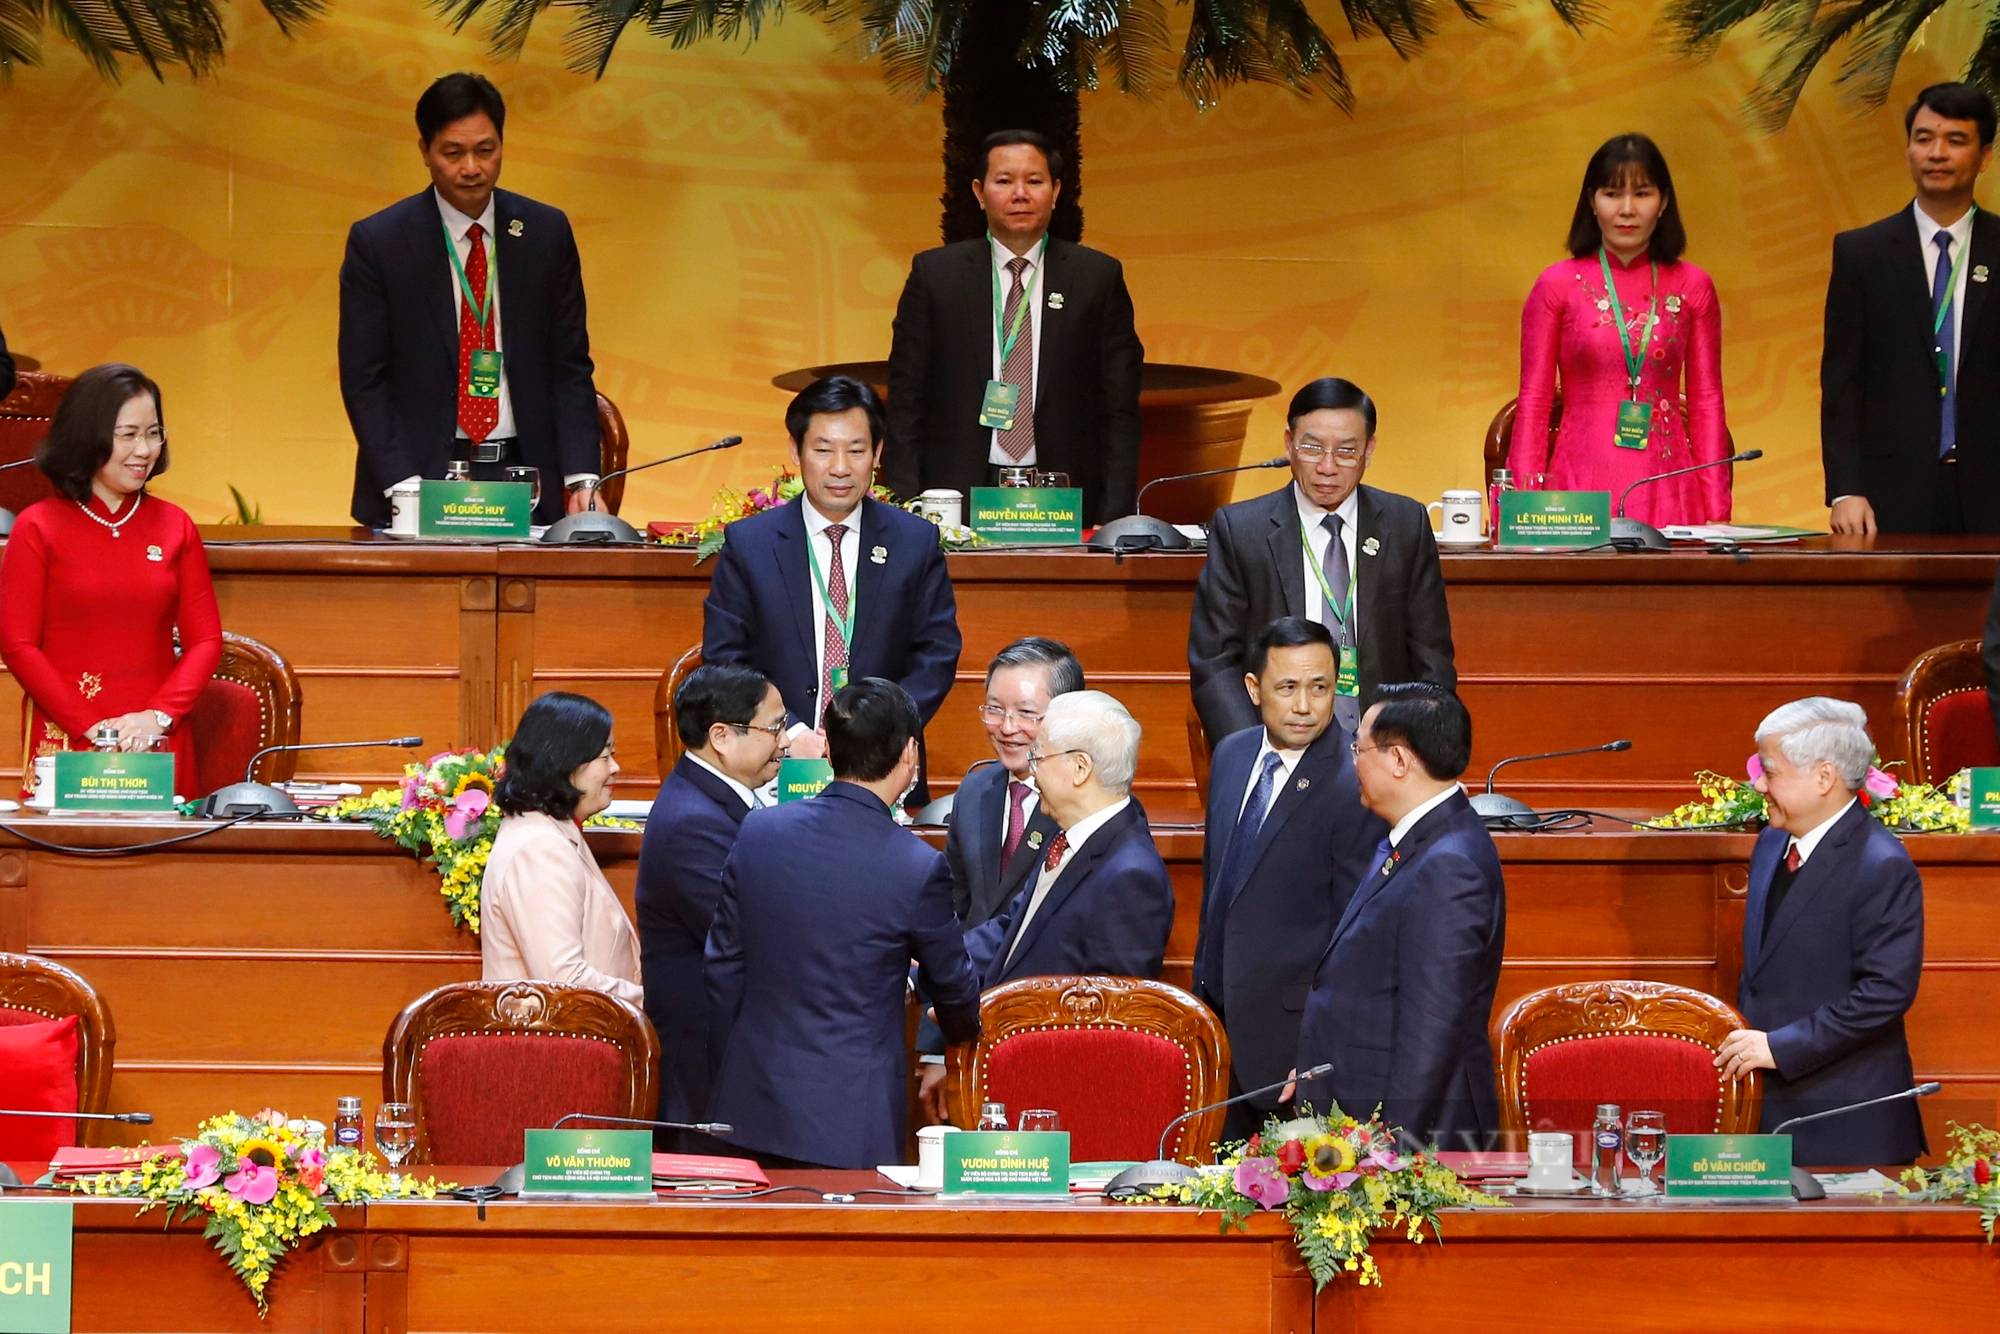 Hình ảnh khai mạc trọng thể Đại hội đại biểu toàn quốc Hội Nông dân Việt Nam lần thứ VIII- Ảnh 9.